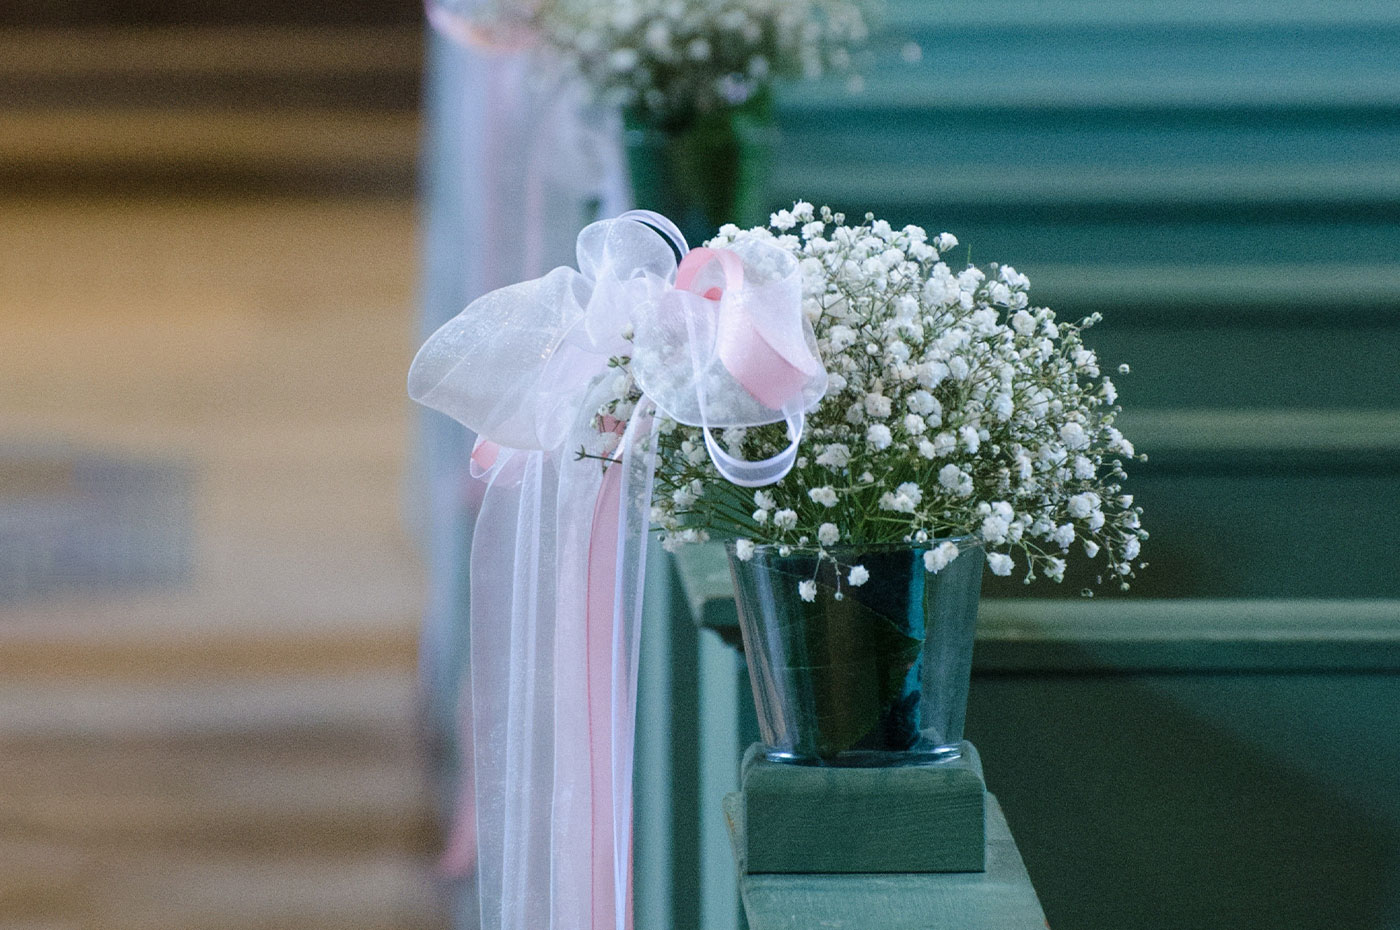 Der Hochzeitsfotograf rät- Blumen wiederverwenden